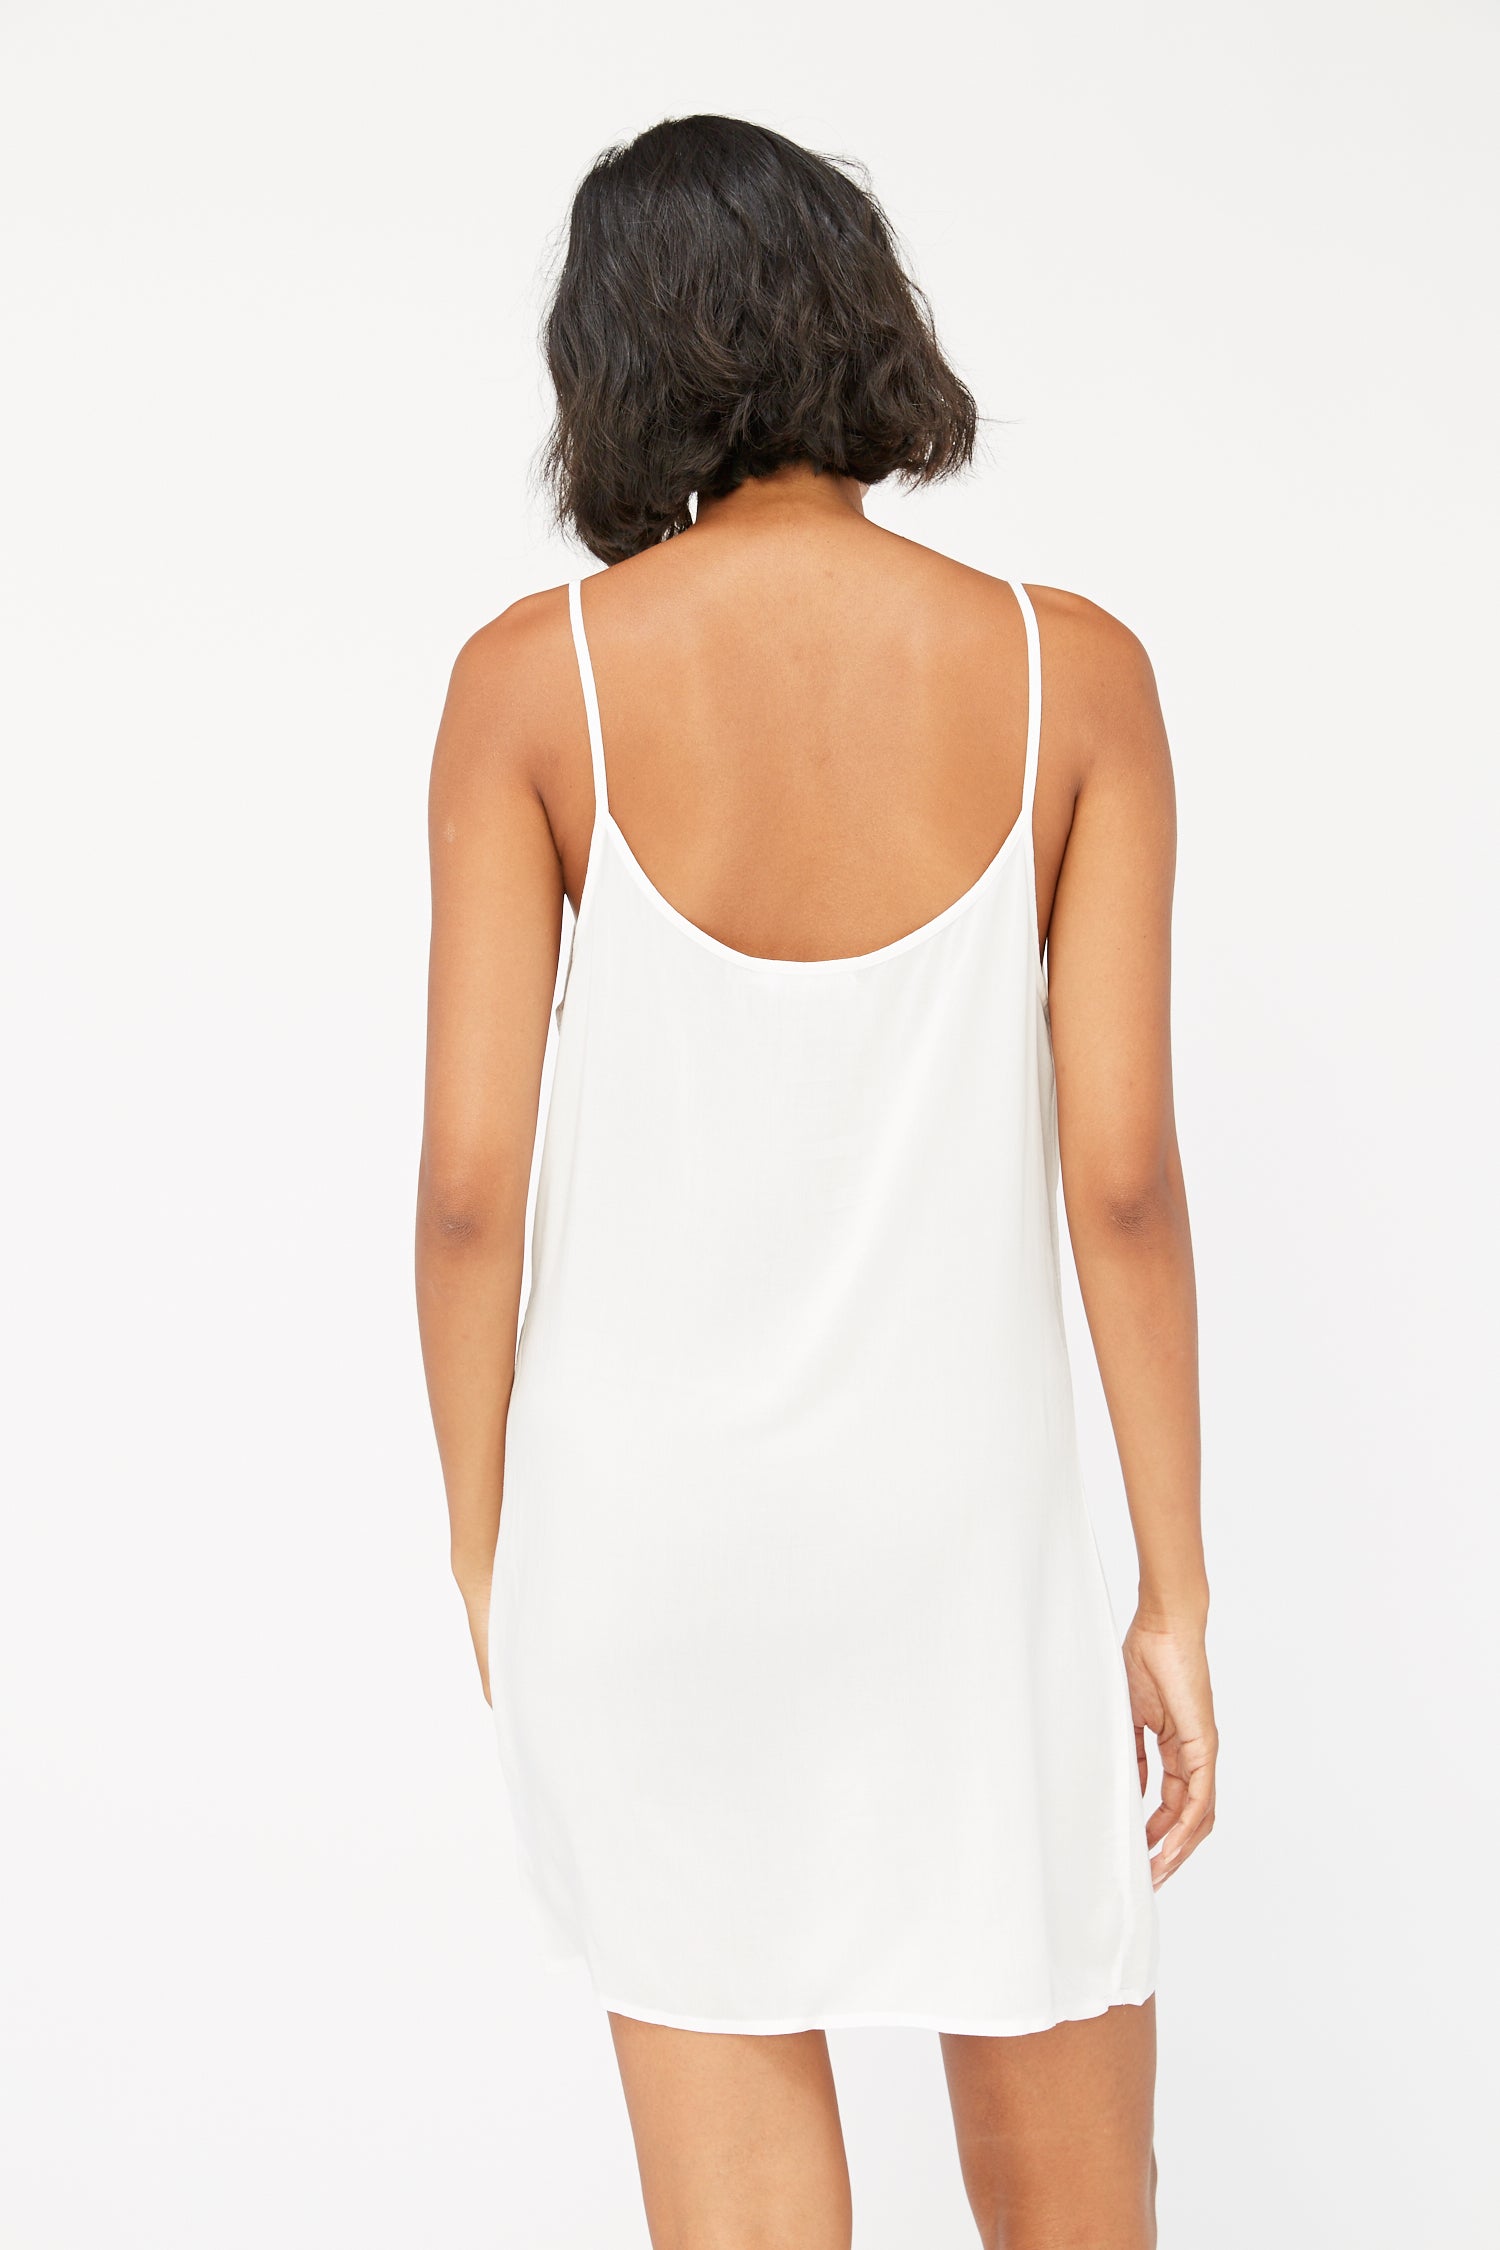 white slip to wear under dress